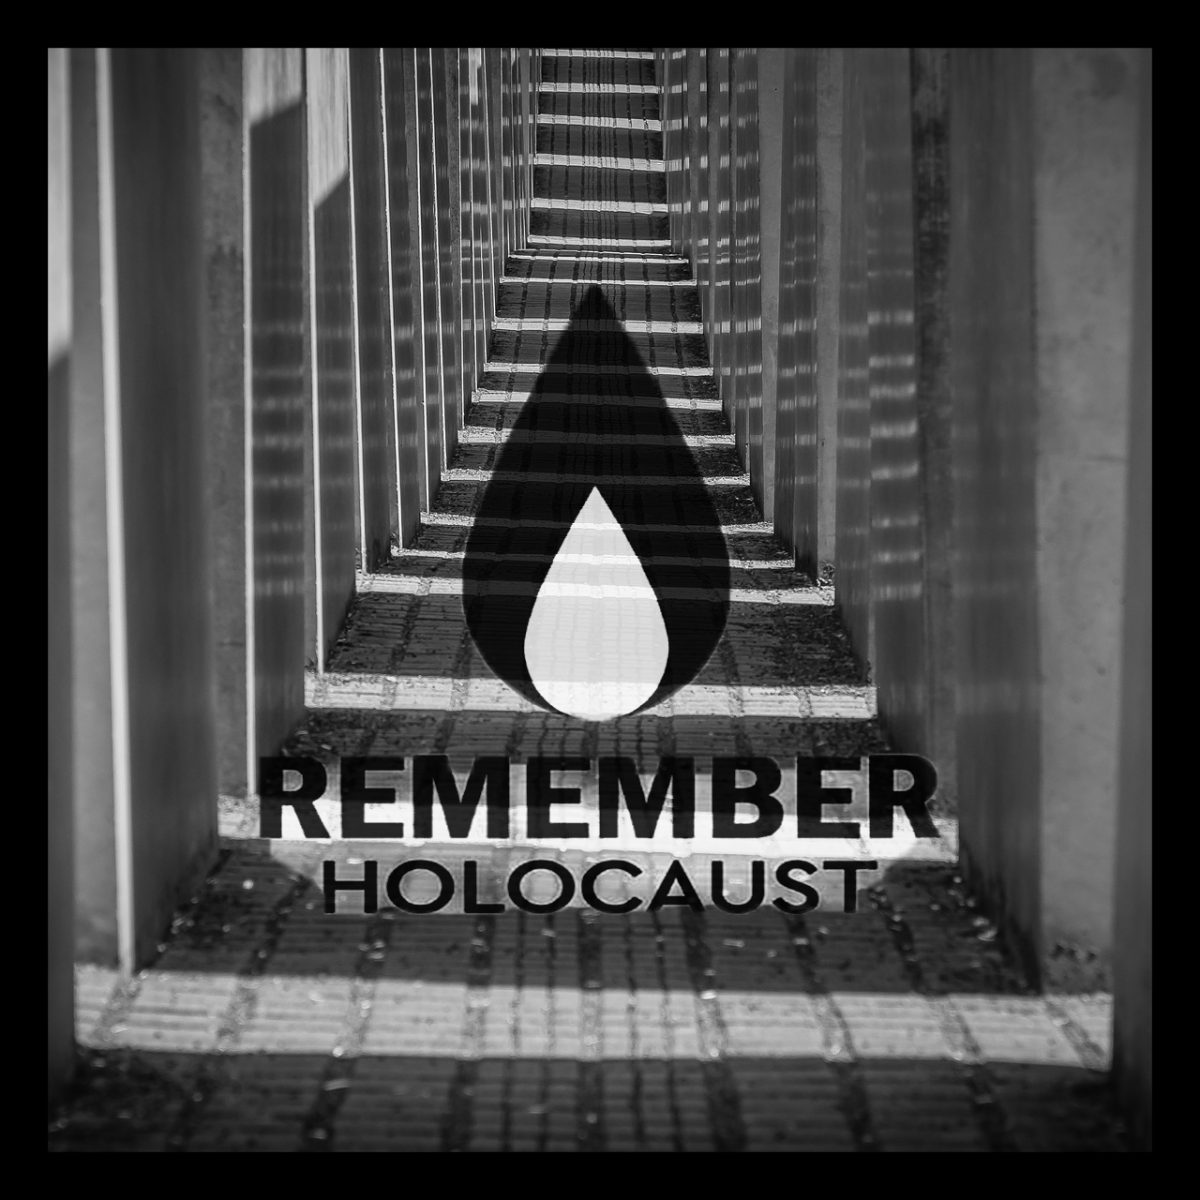 Holocaust 2